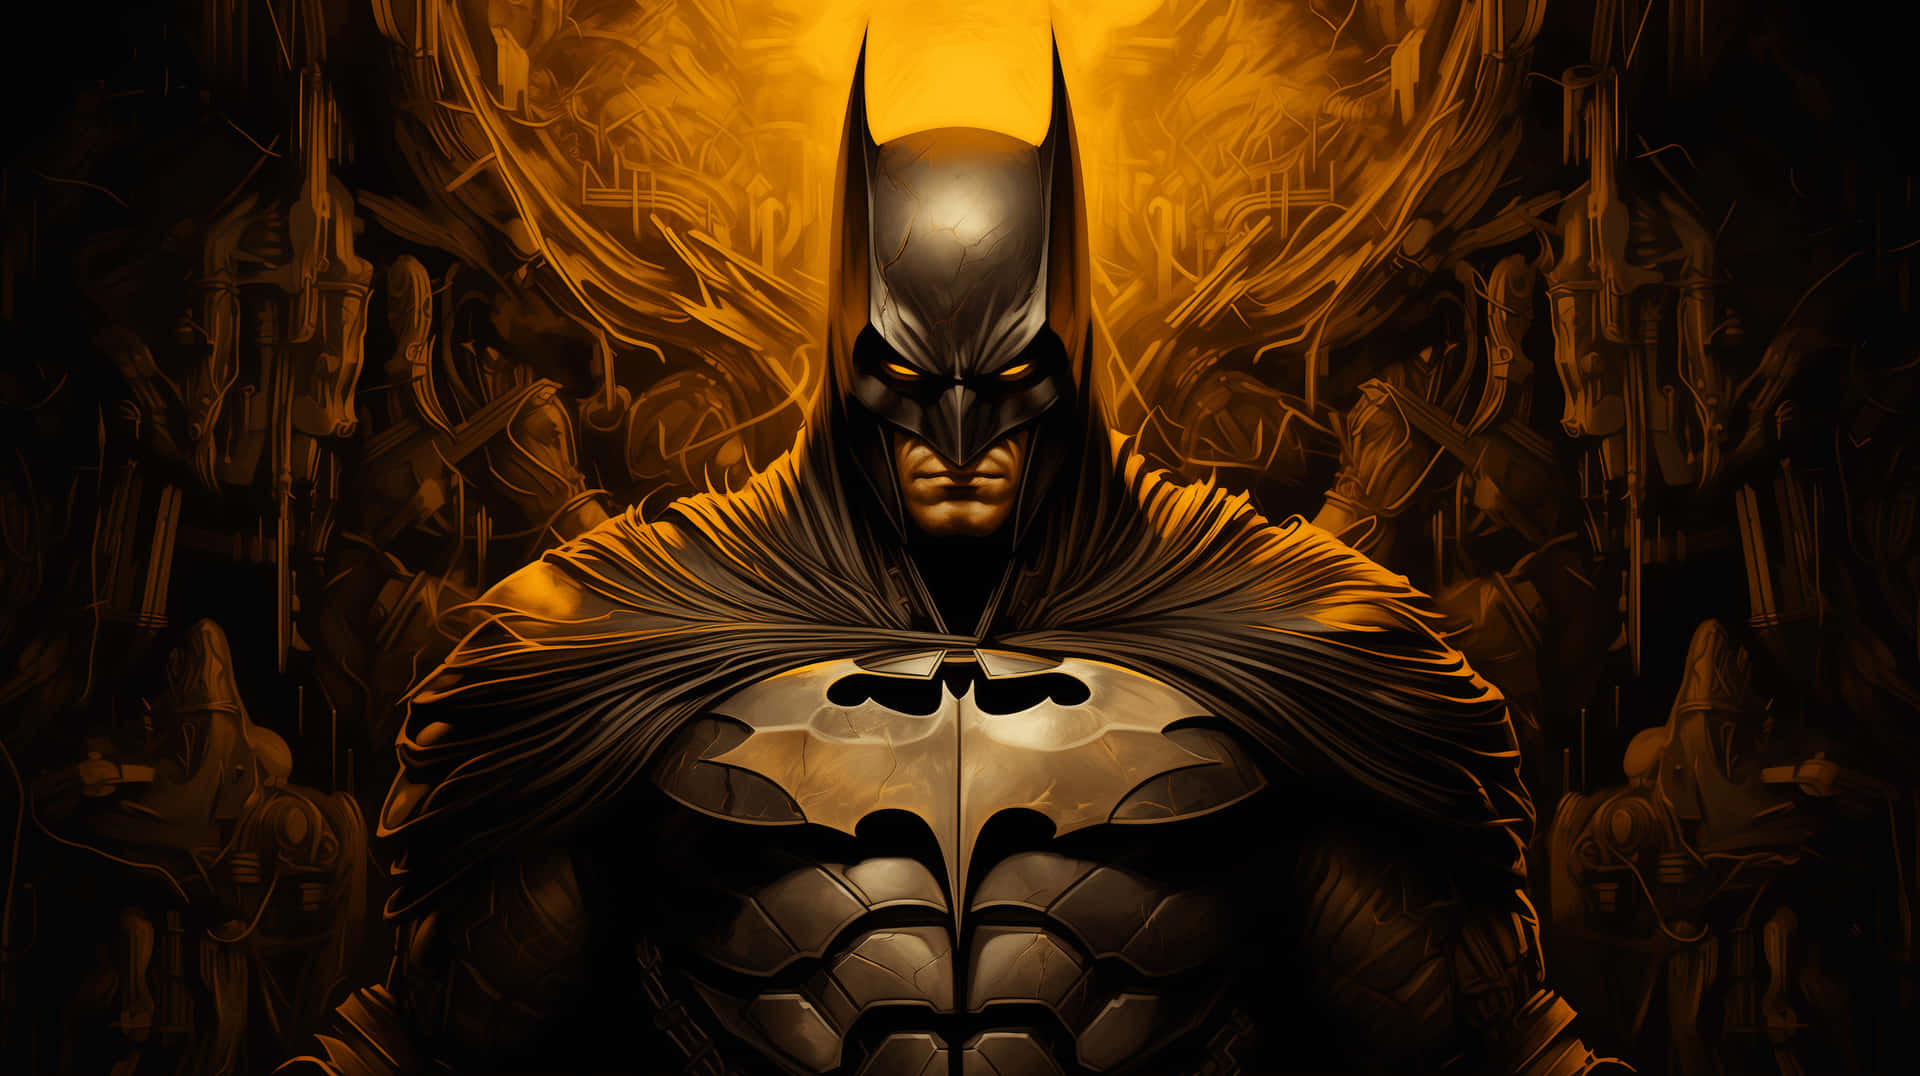 Dark Knight Gothic Artwork Wallpaper